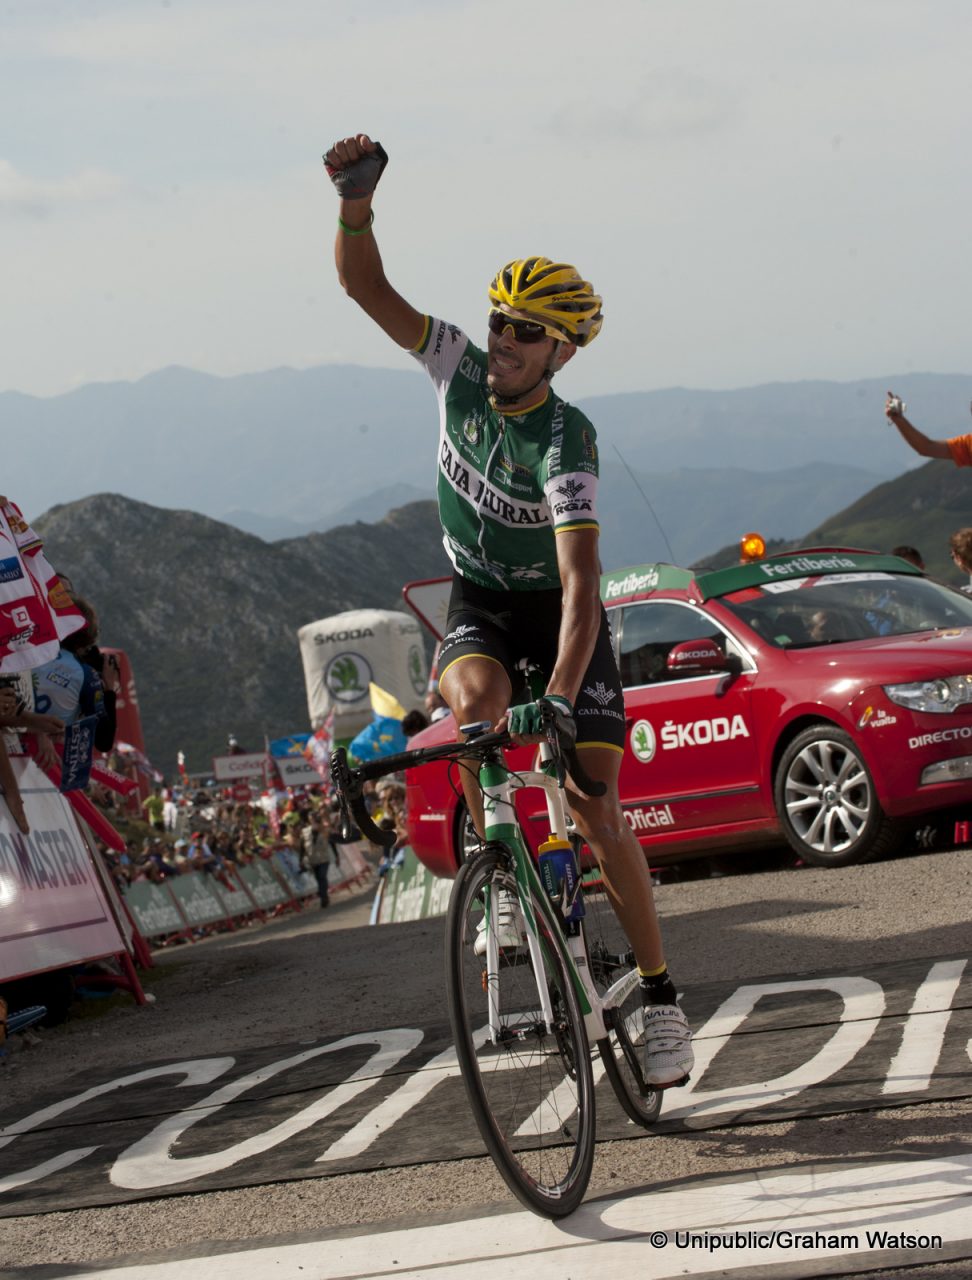 Tour d'Espagne # 15 : Antonio Piedra, la victoire d’un ingnieur